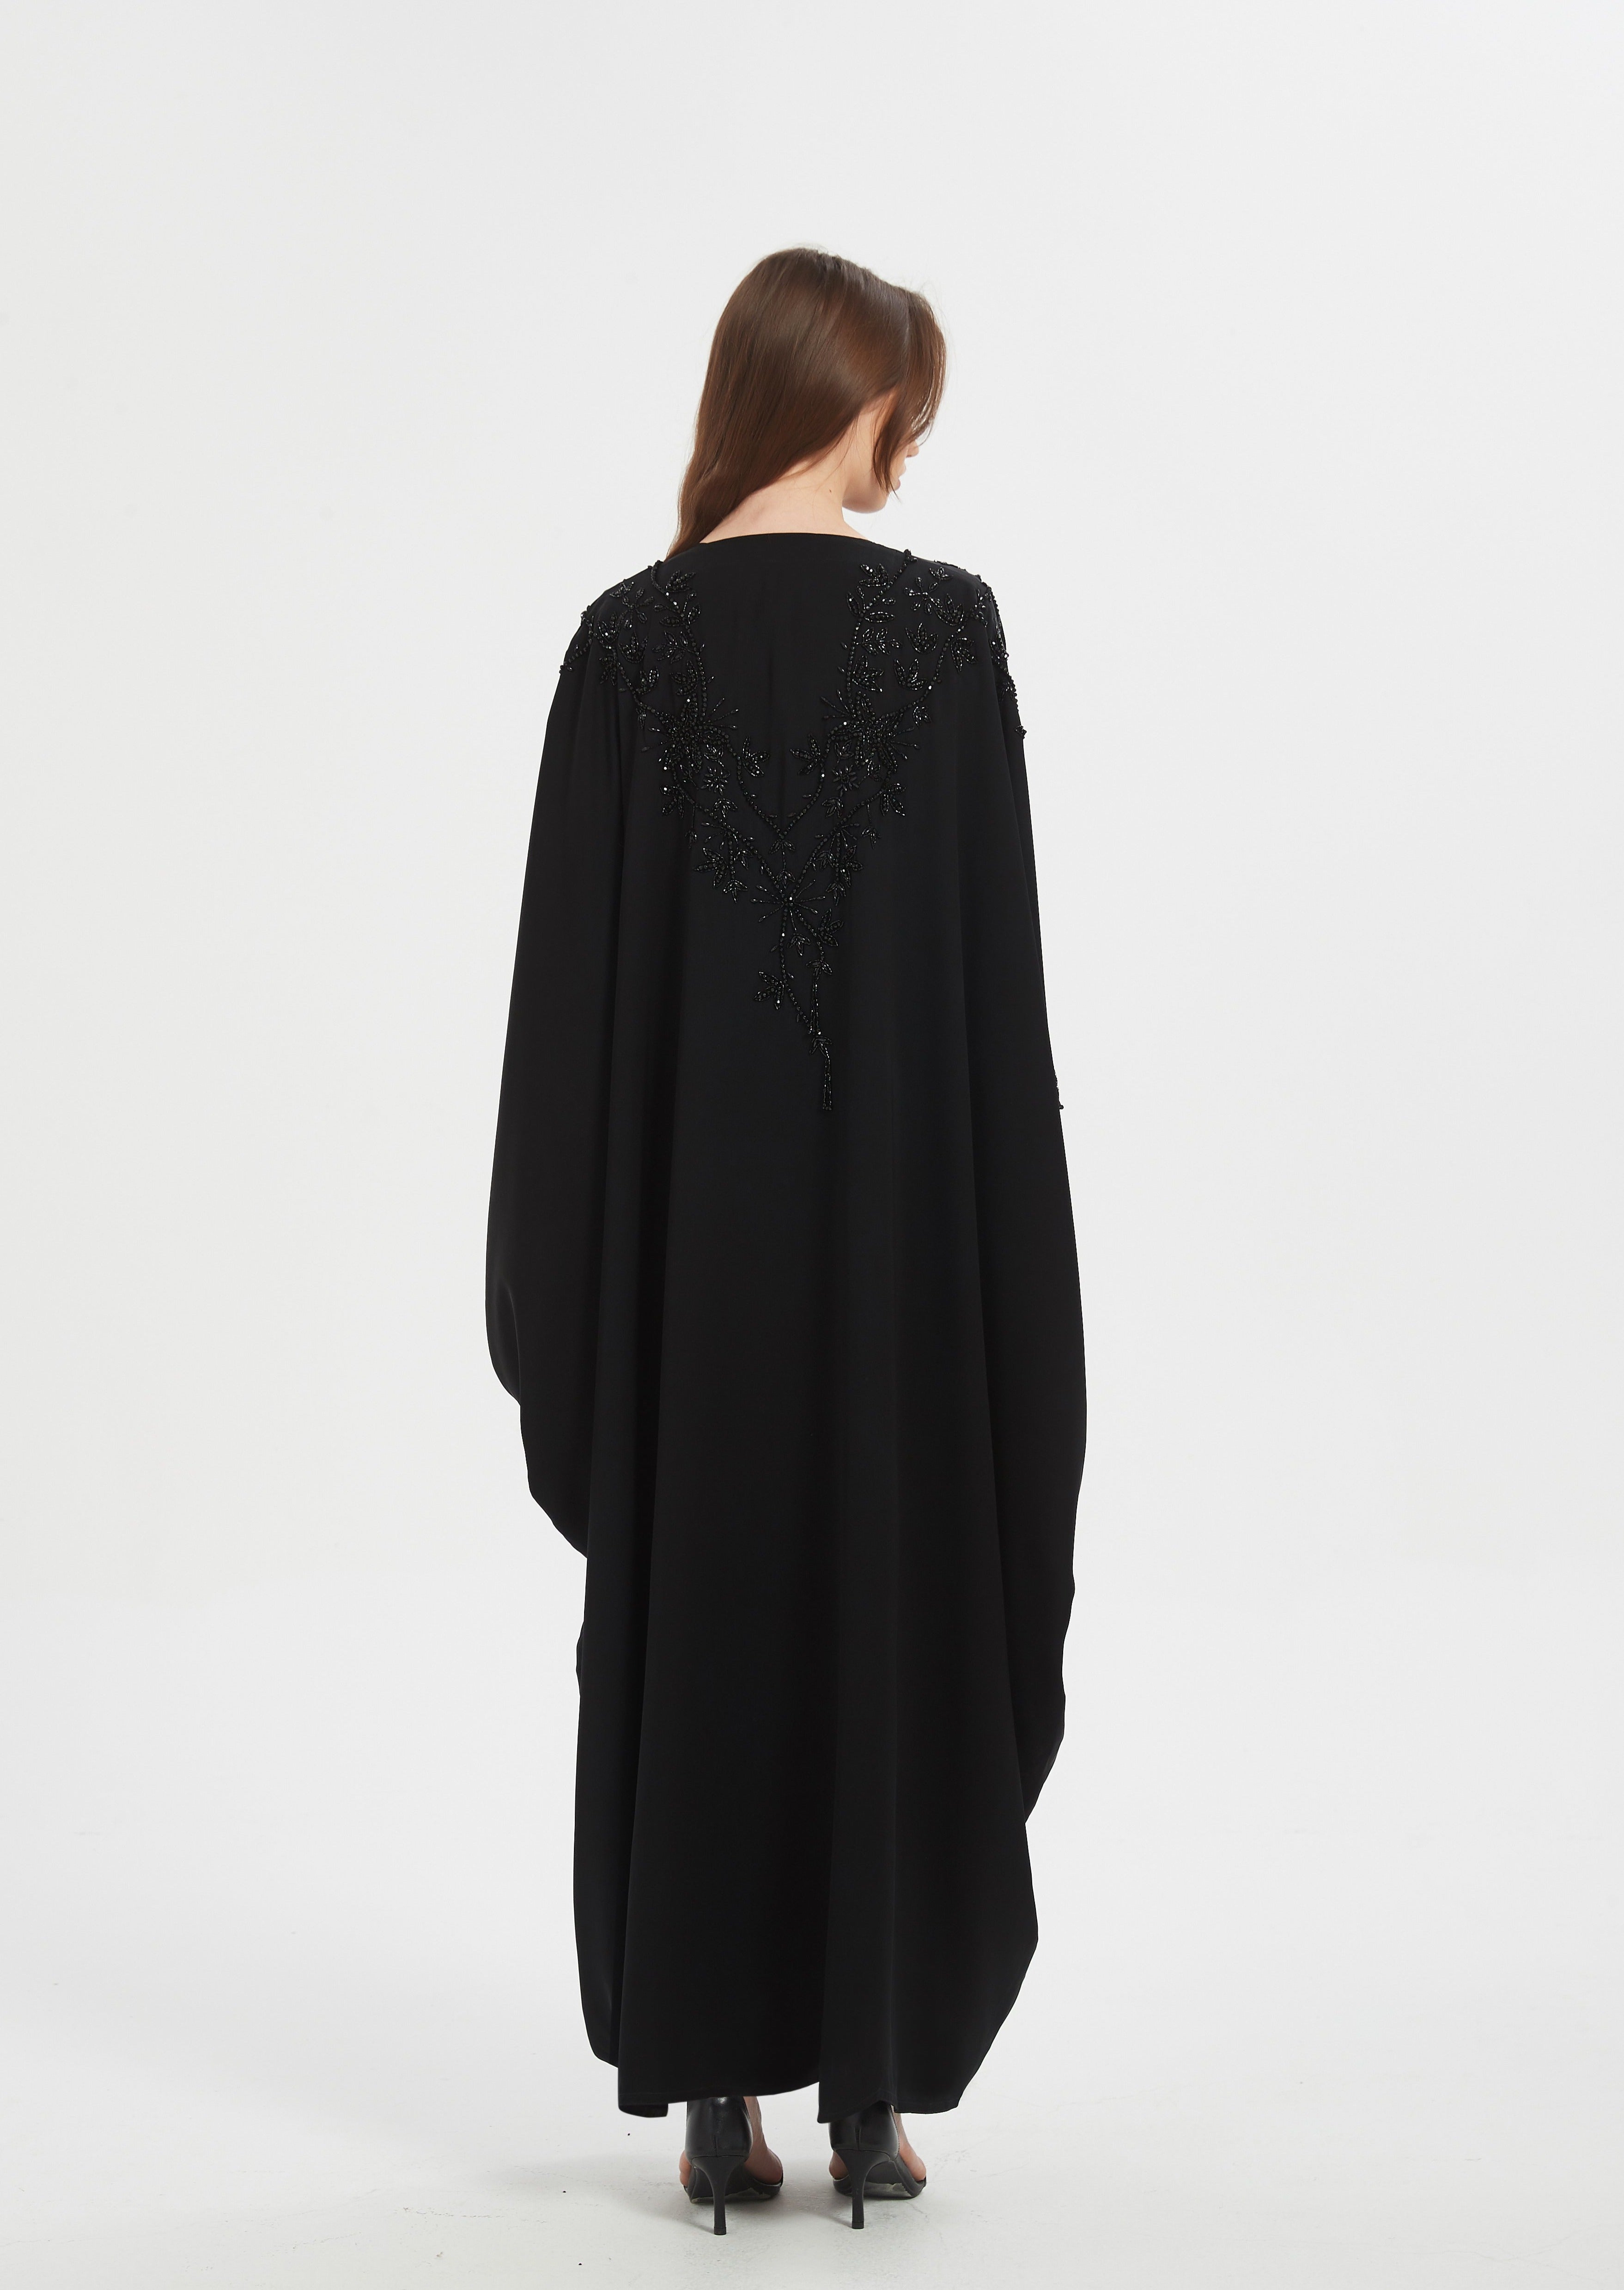 Niara Kaftan Style Abaya - Black